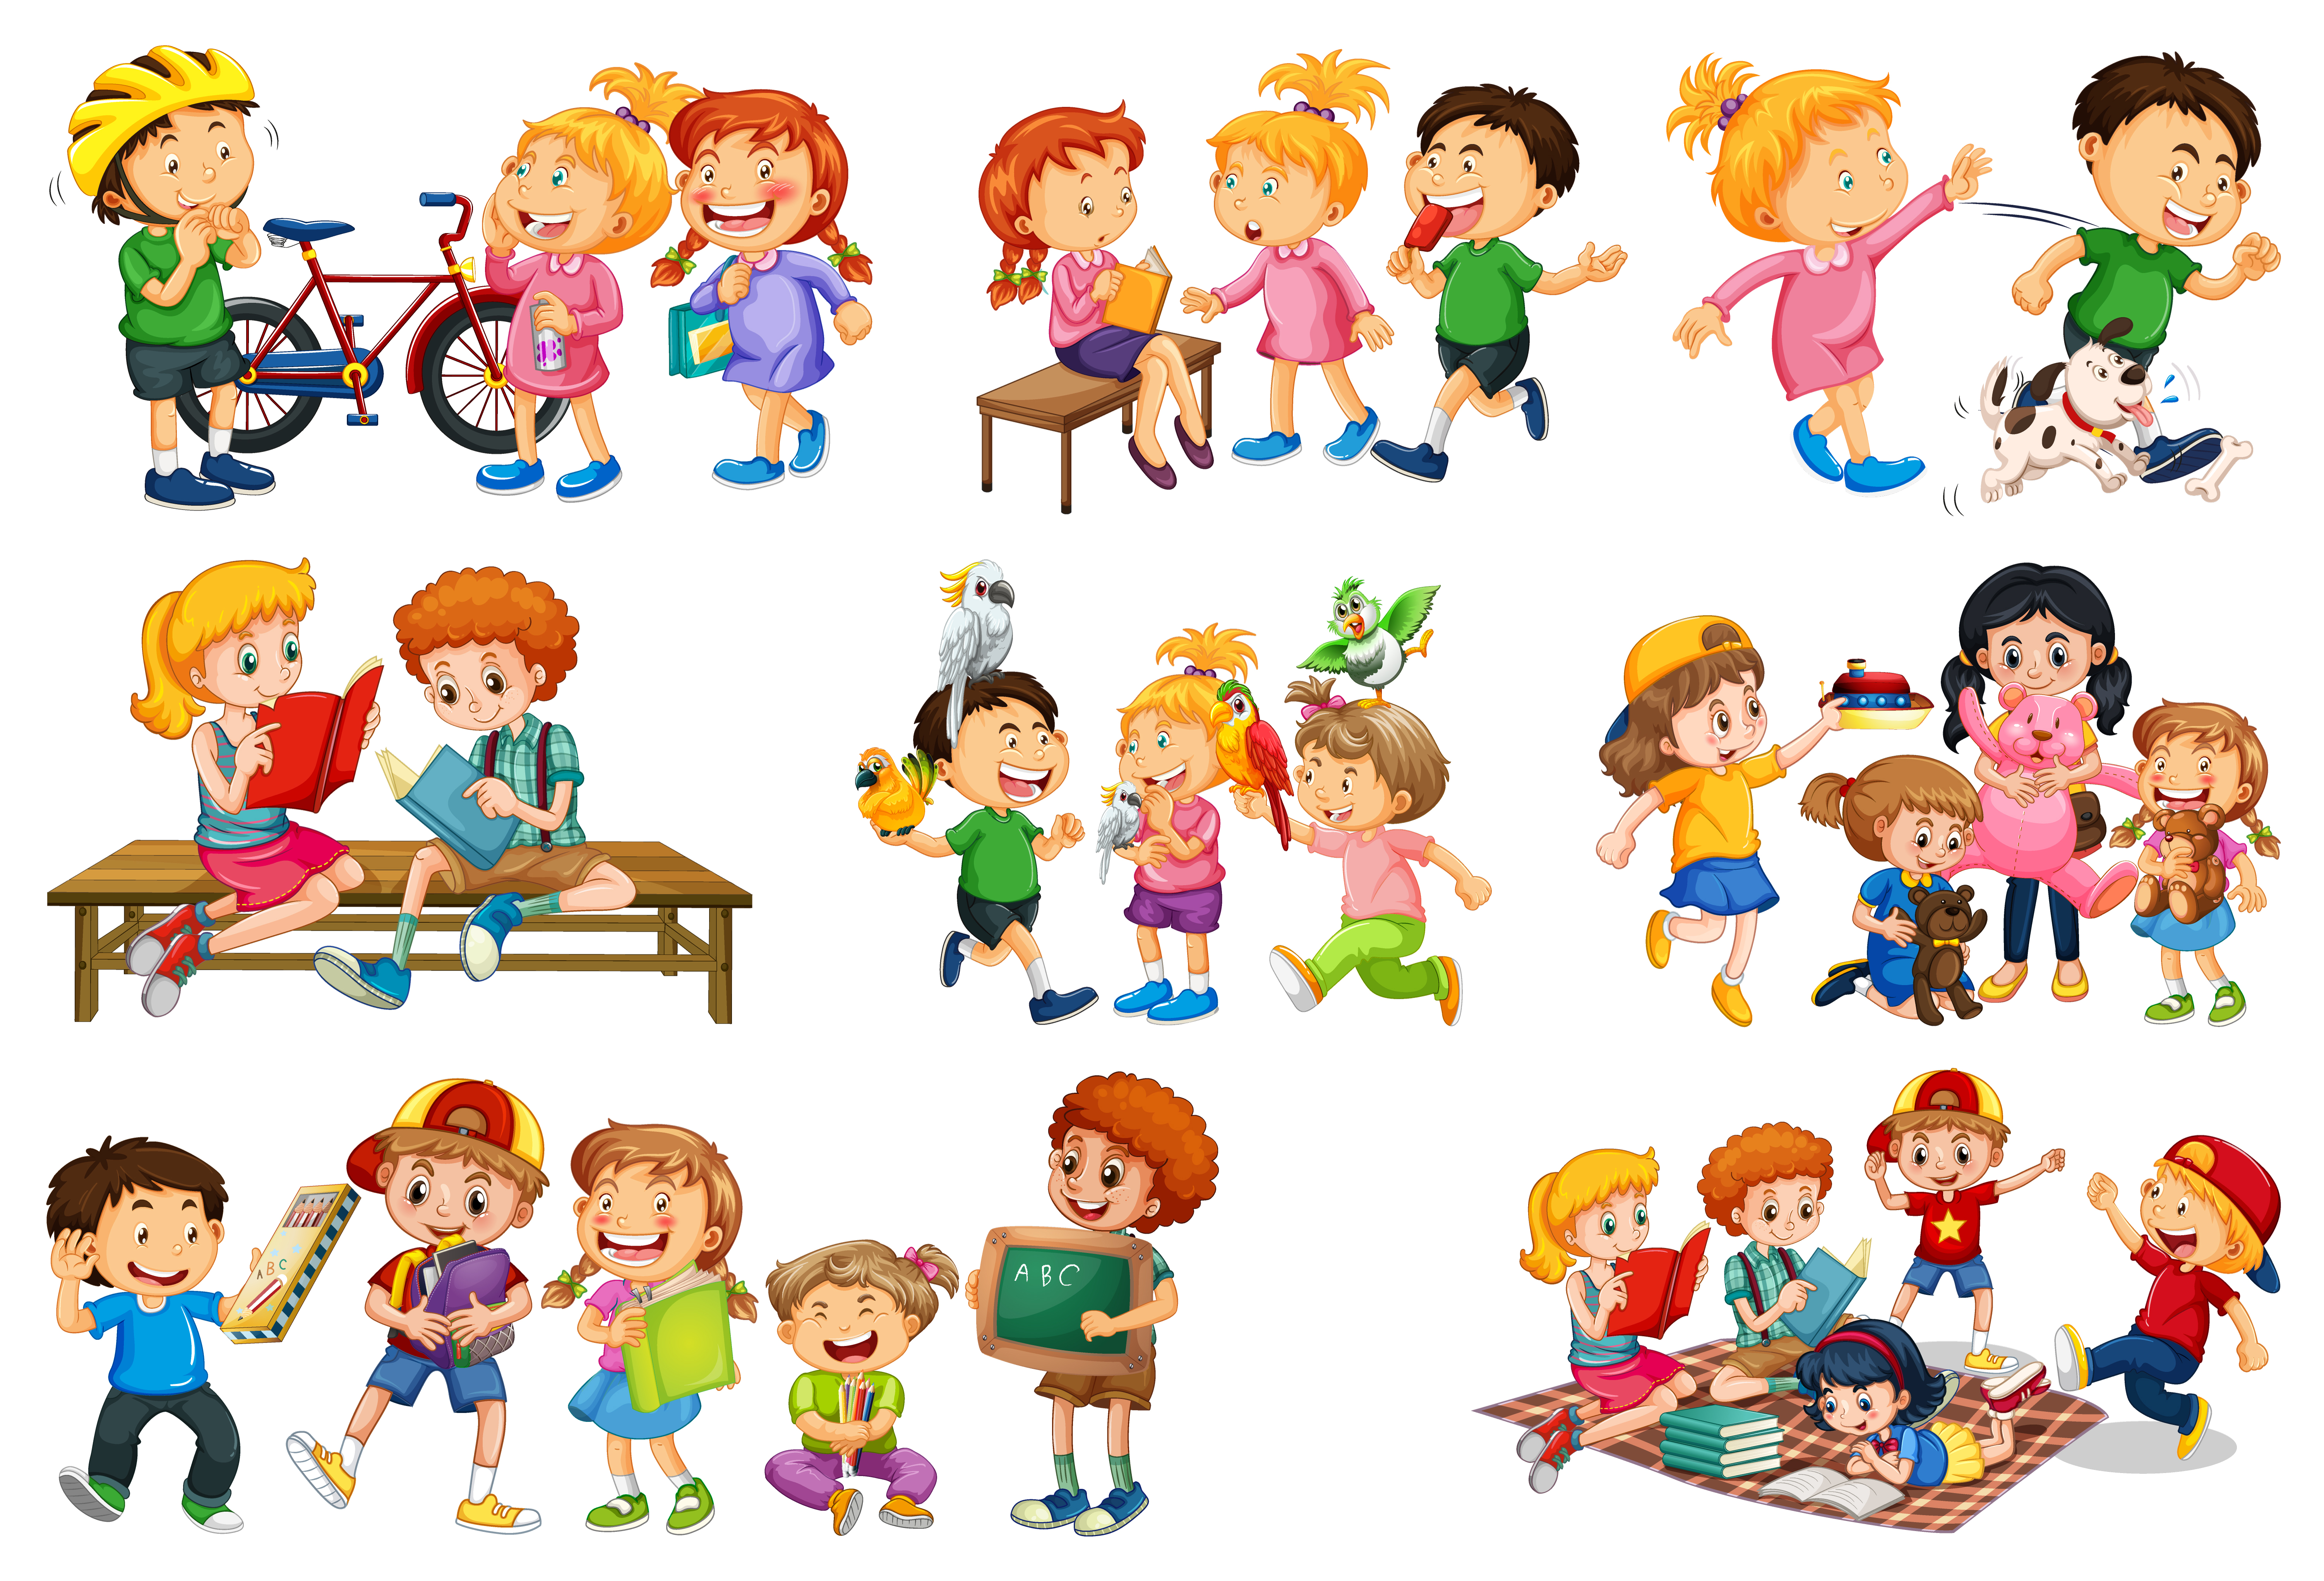 Niños jugando a diferentes juegos y juguetes. personajes ambientados en  estilo de dibujos animados. juego infantil con juguetes, personajes,  ilustración de juegos de niñas y niños